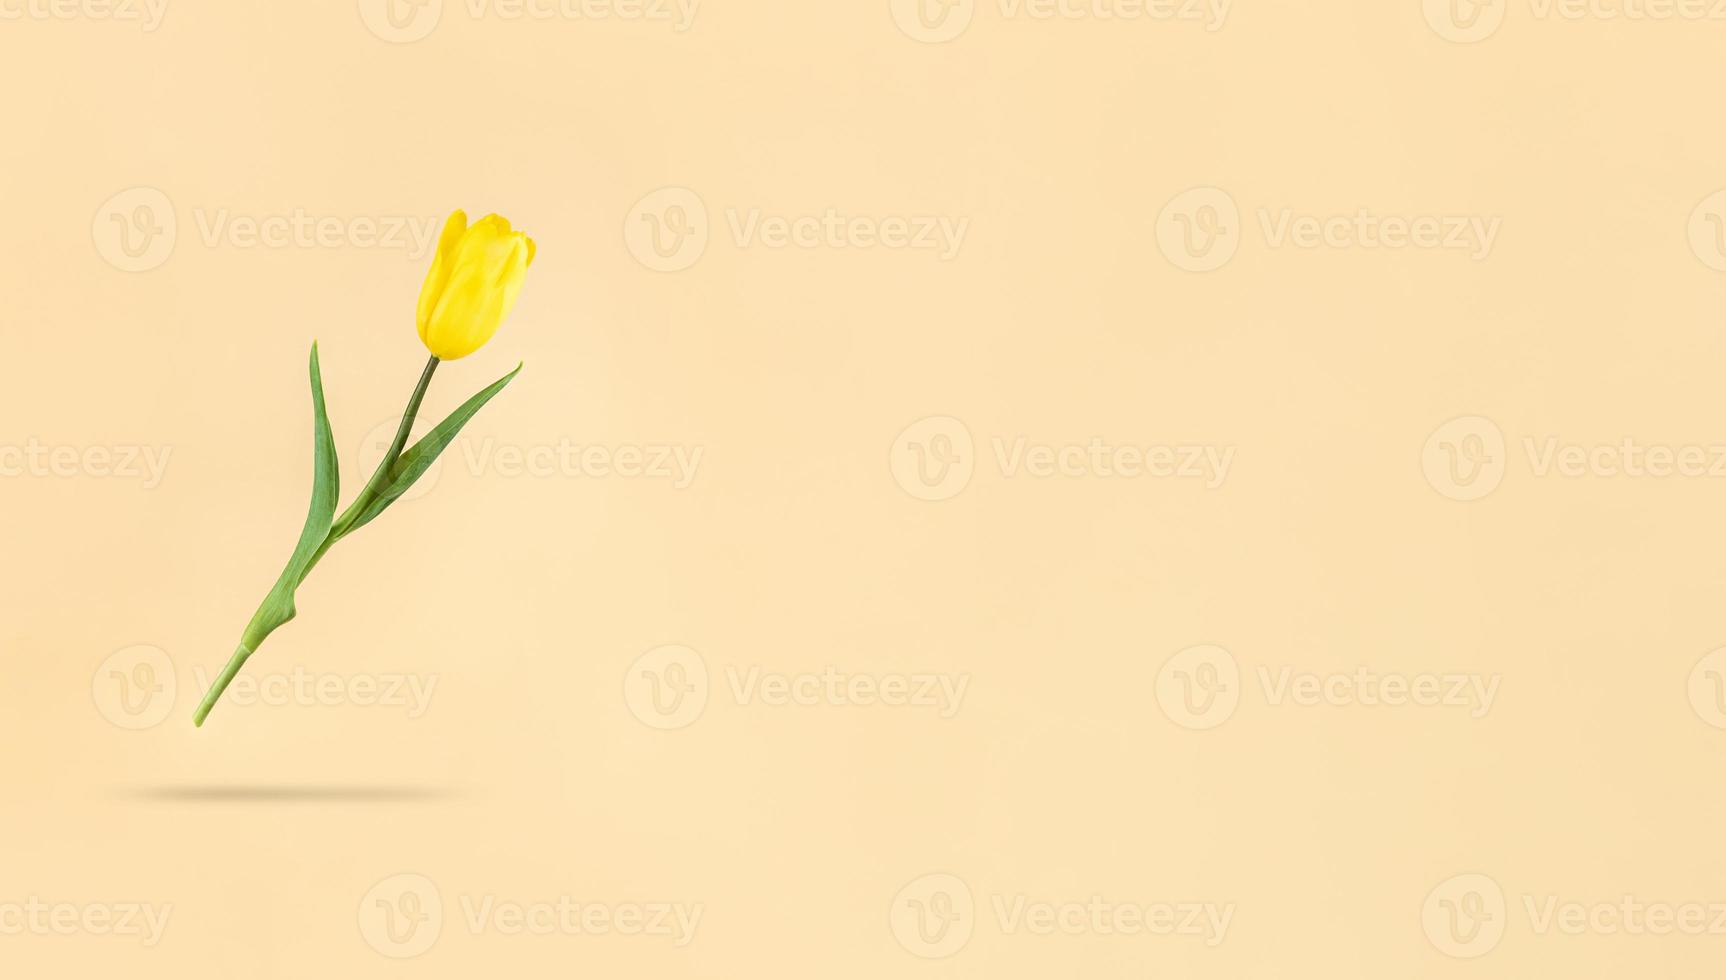 levitando tulipán amarillo sobre fondo beige y sombra debajo de ella mimimalistic holiday stock photo con espacio de copia foto